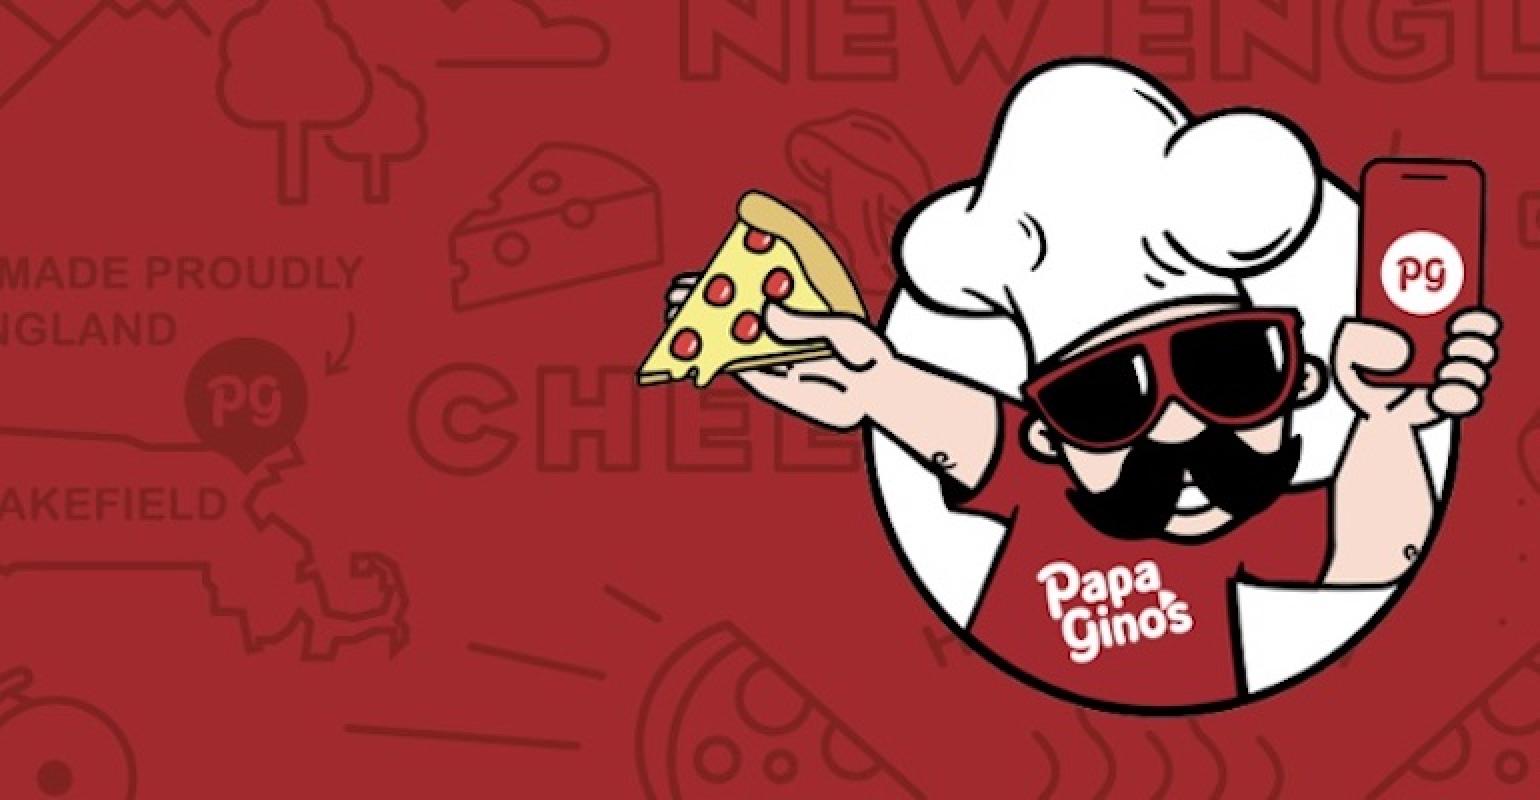  Papa Gino's Pizzeria